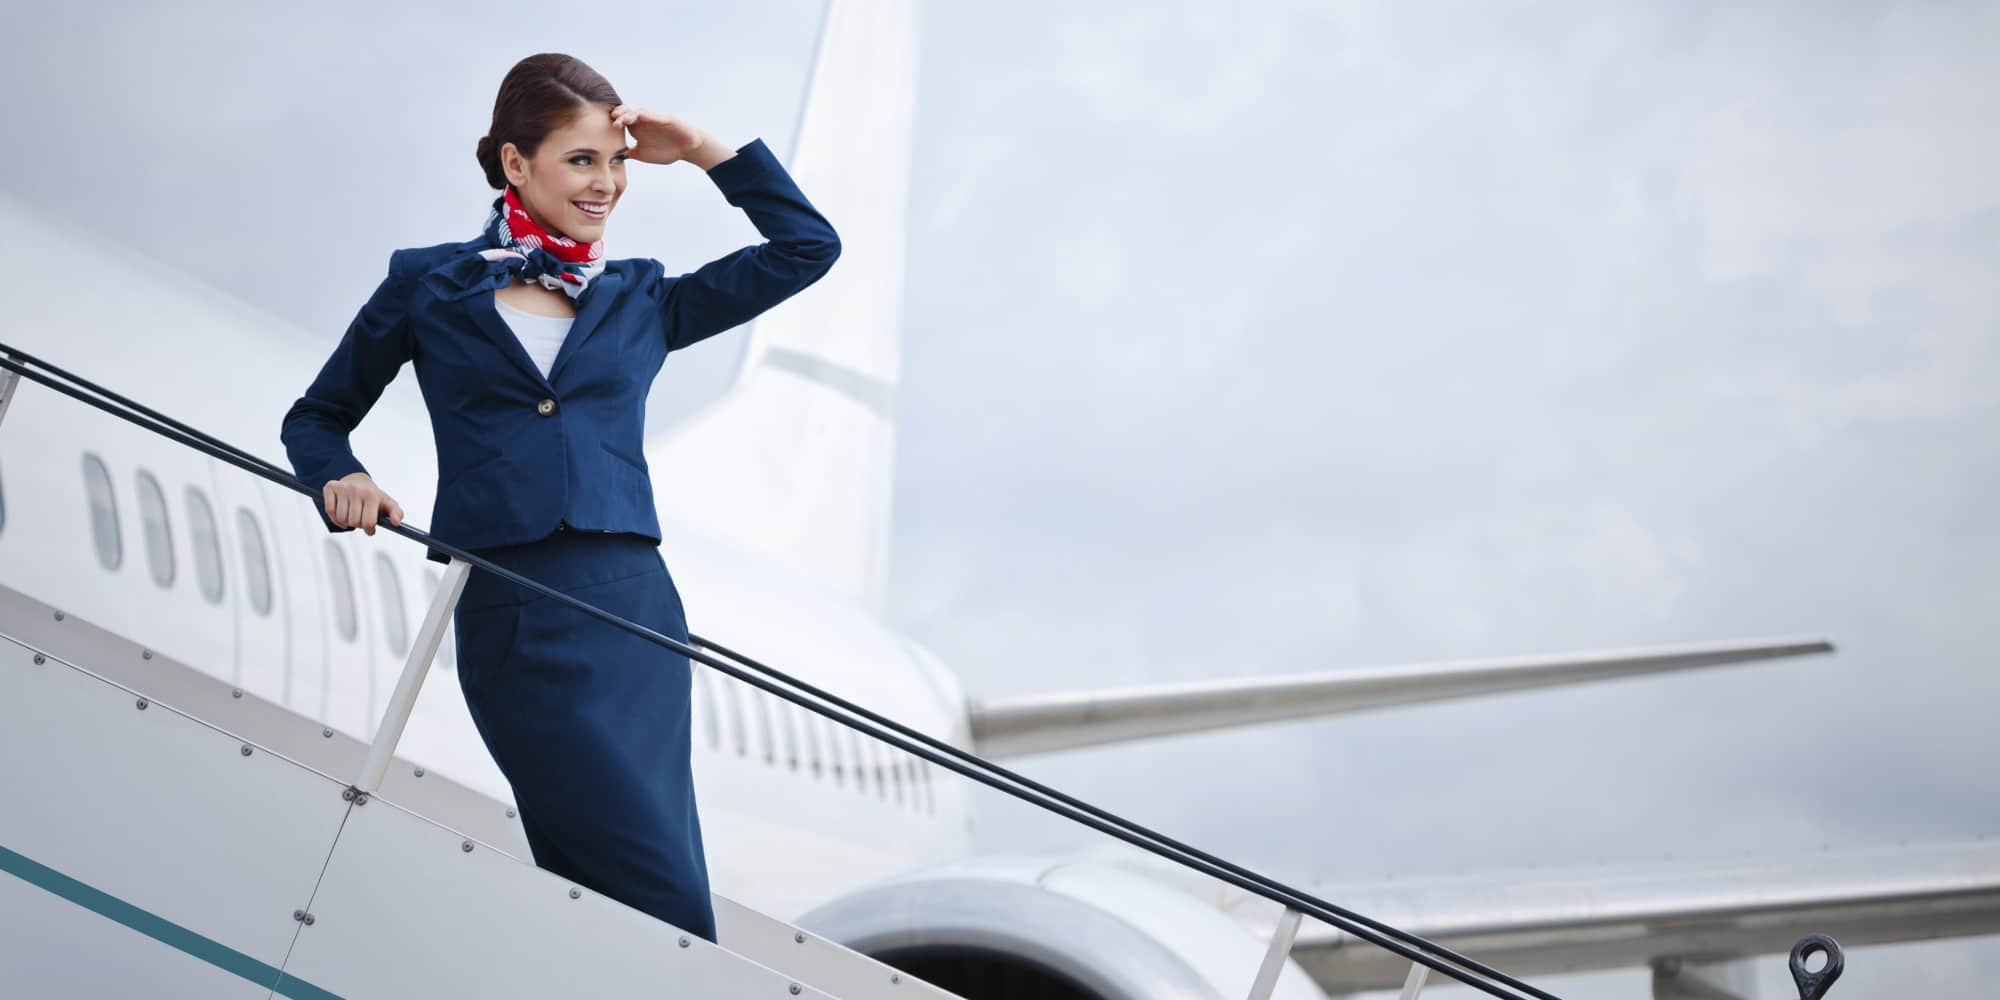 10 popular Flight attendants on Instagram